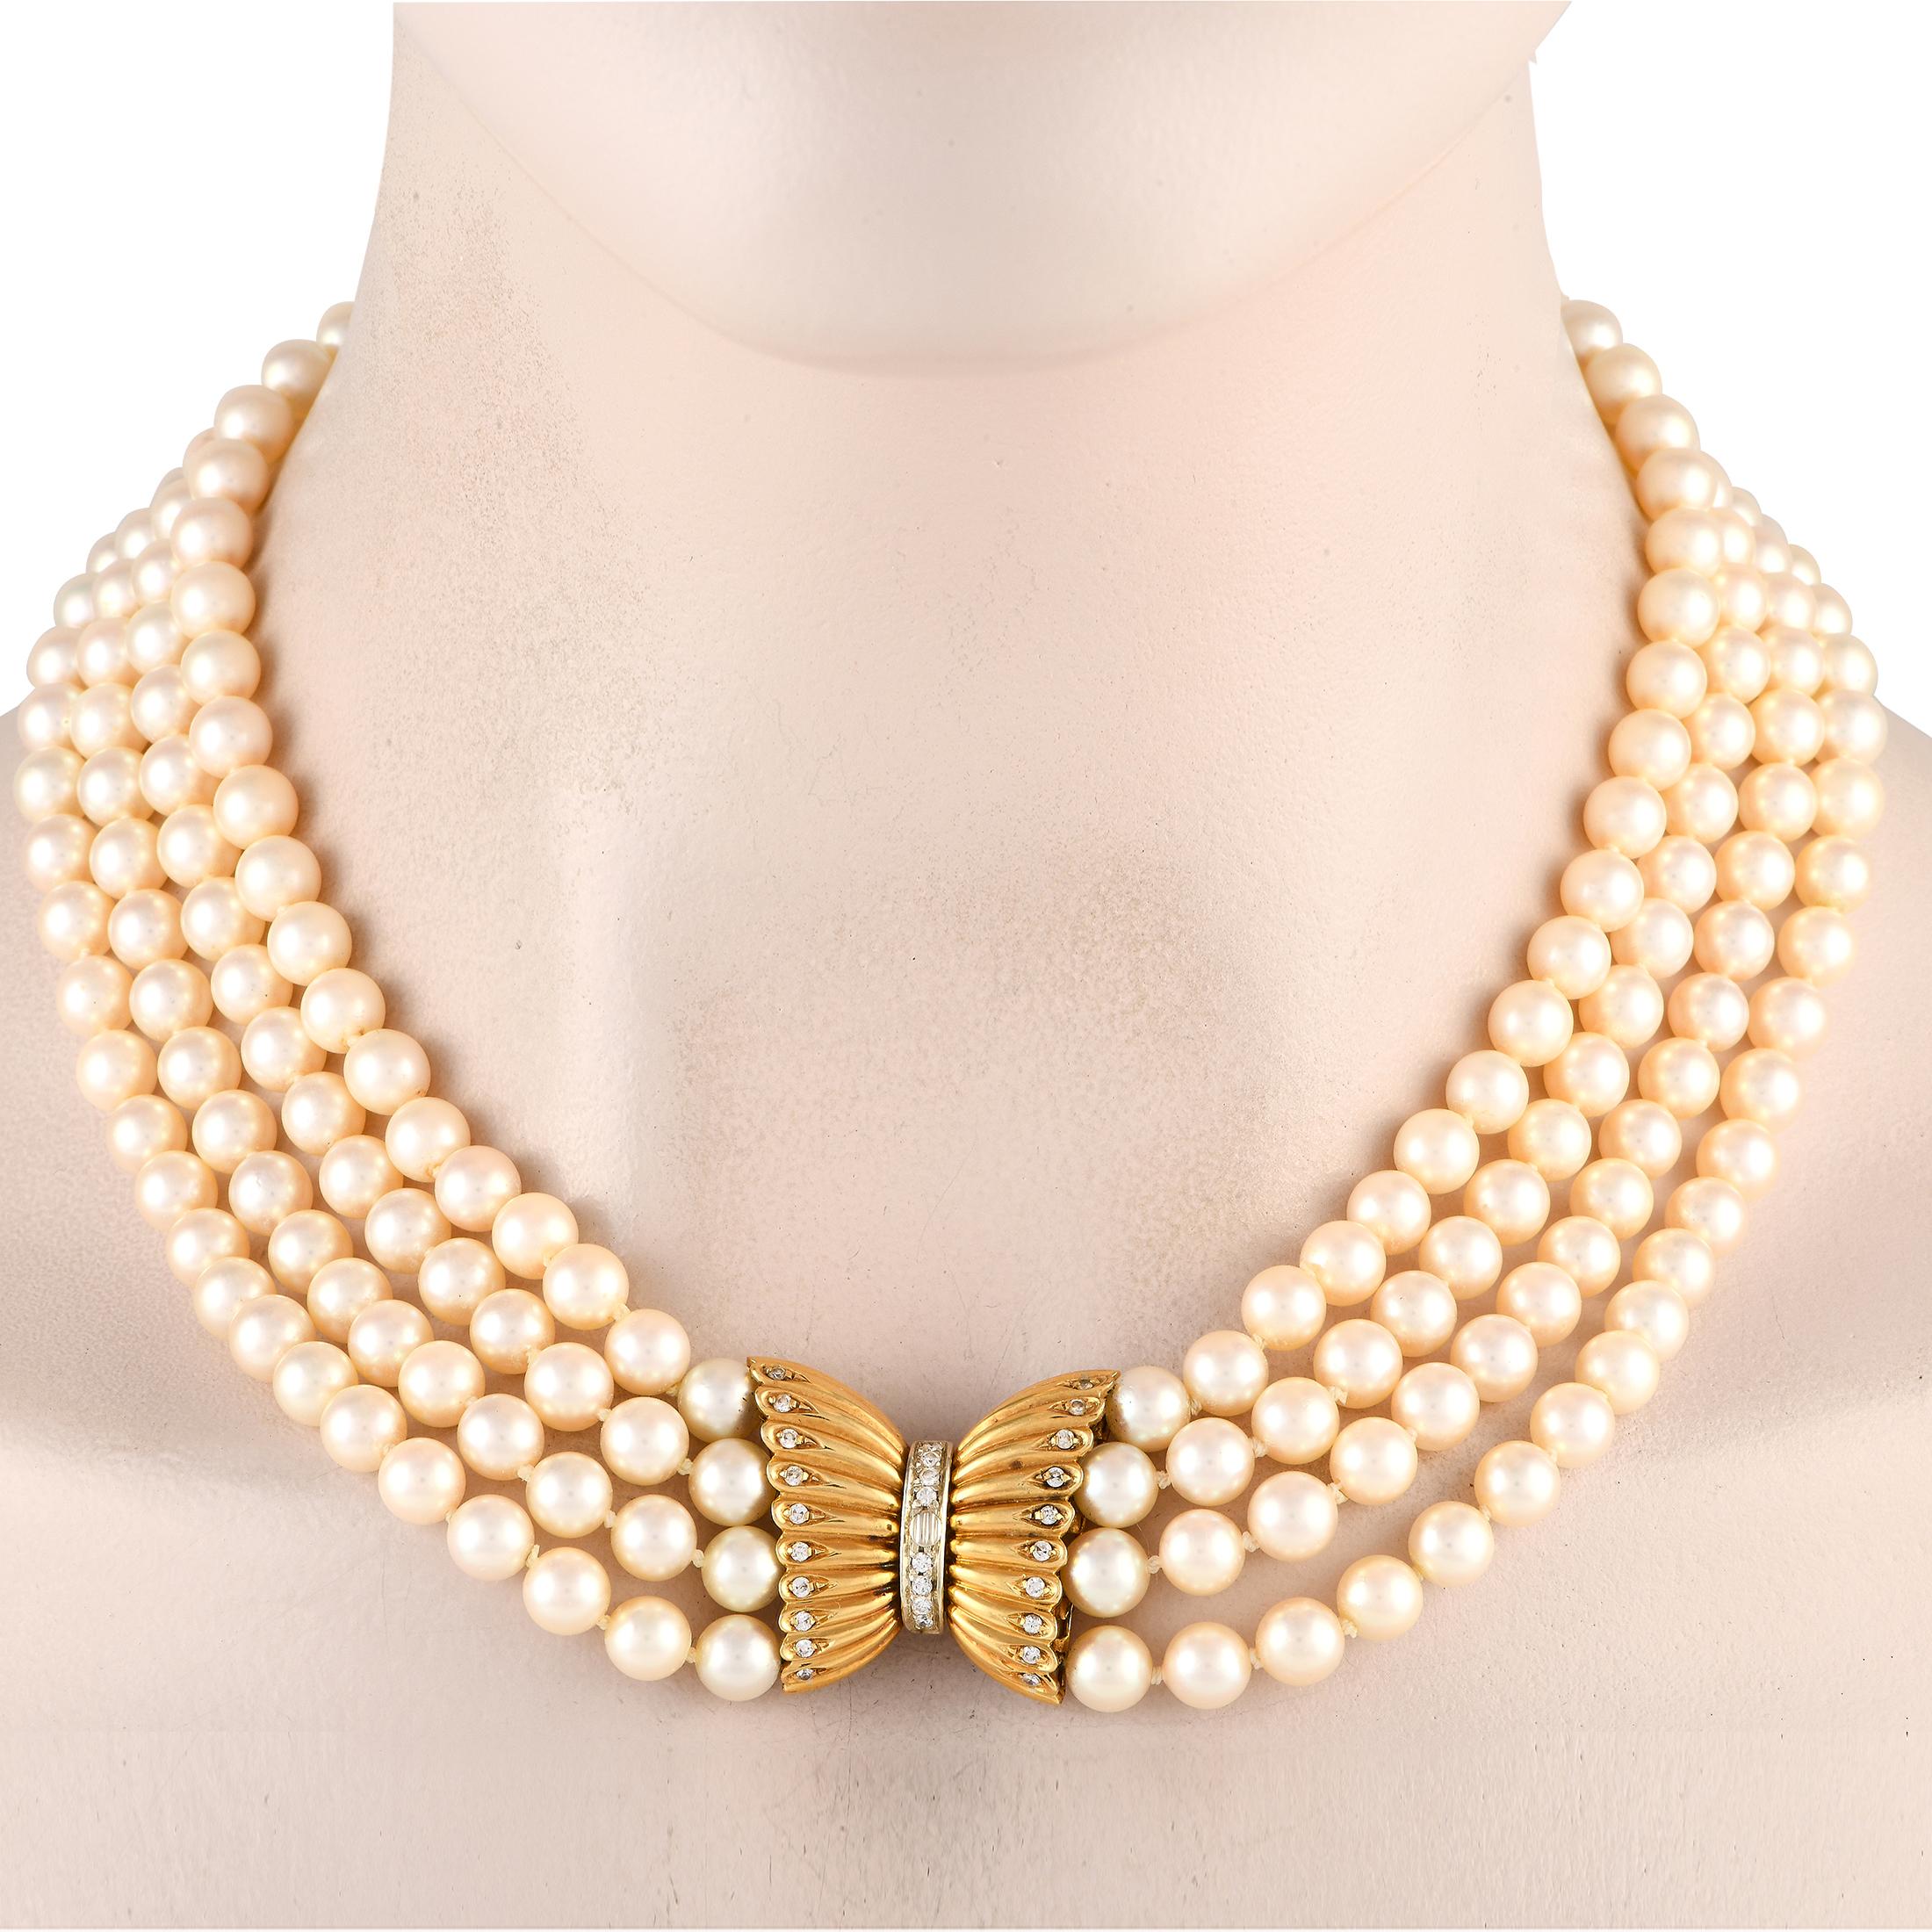 Es ist unmöglich, den herrlichen Glanz dieser Halskette zu übersehen. Dieser fabelhafte Halsschmuck besteht aus vier Strängen mit 7,5 mm großen Perlen, die mit einem diamantbesetzten 18-karätigen Gelbgold-Verschluss mit Schleifenmotiv verschlossen